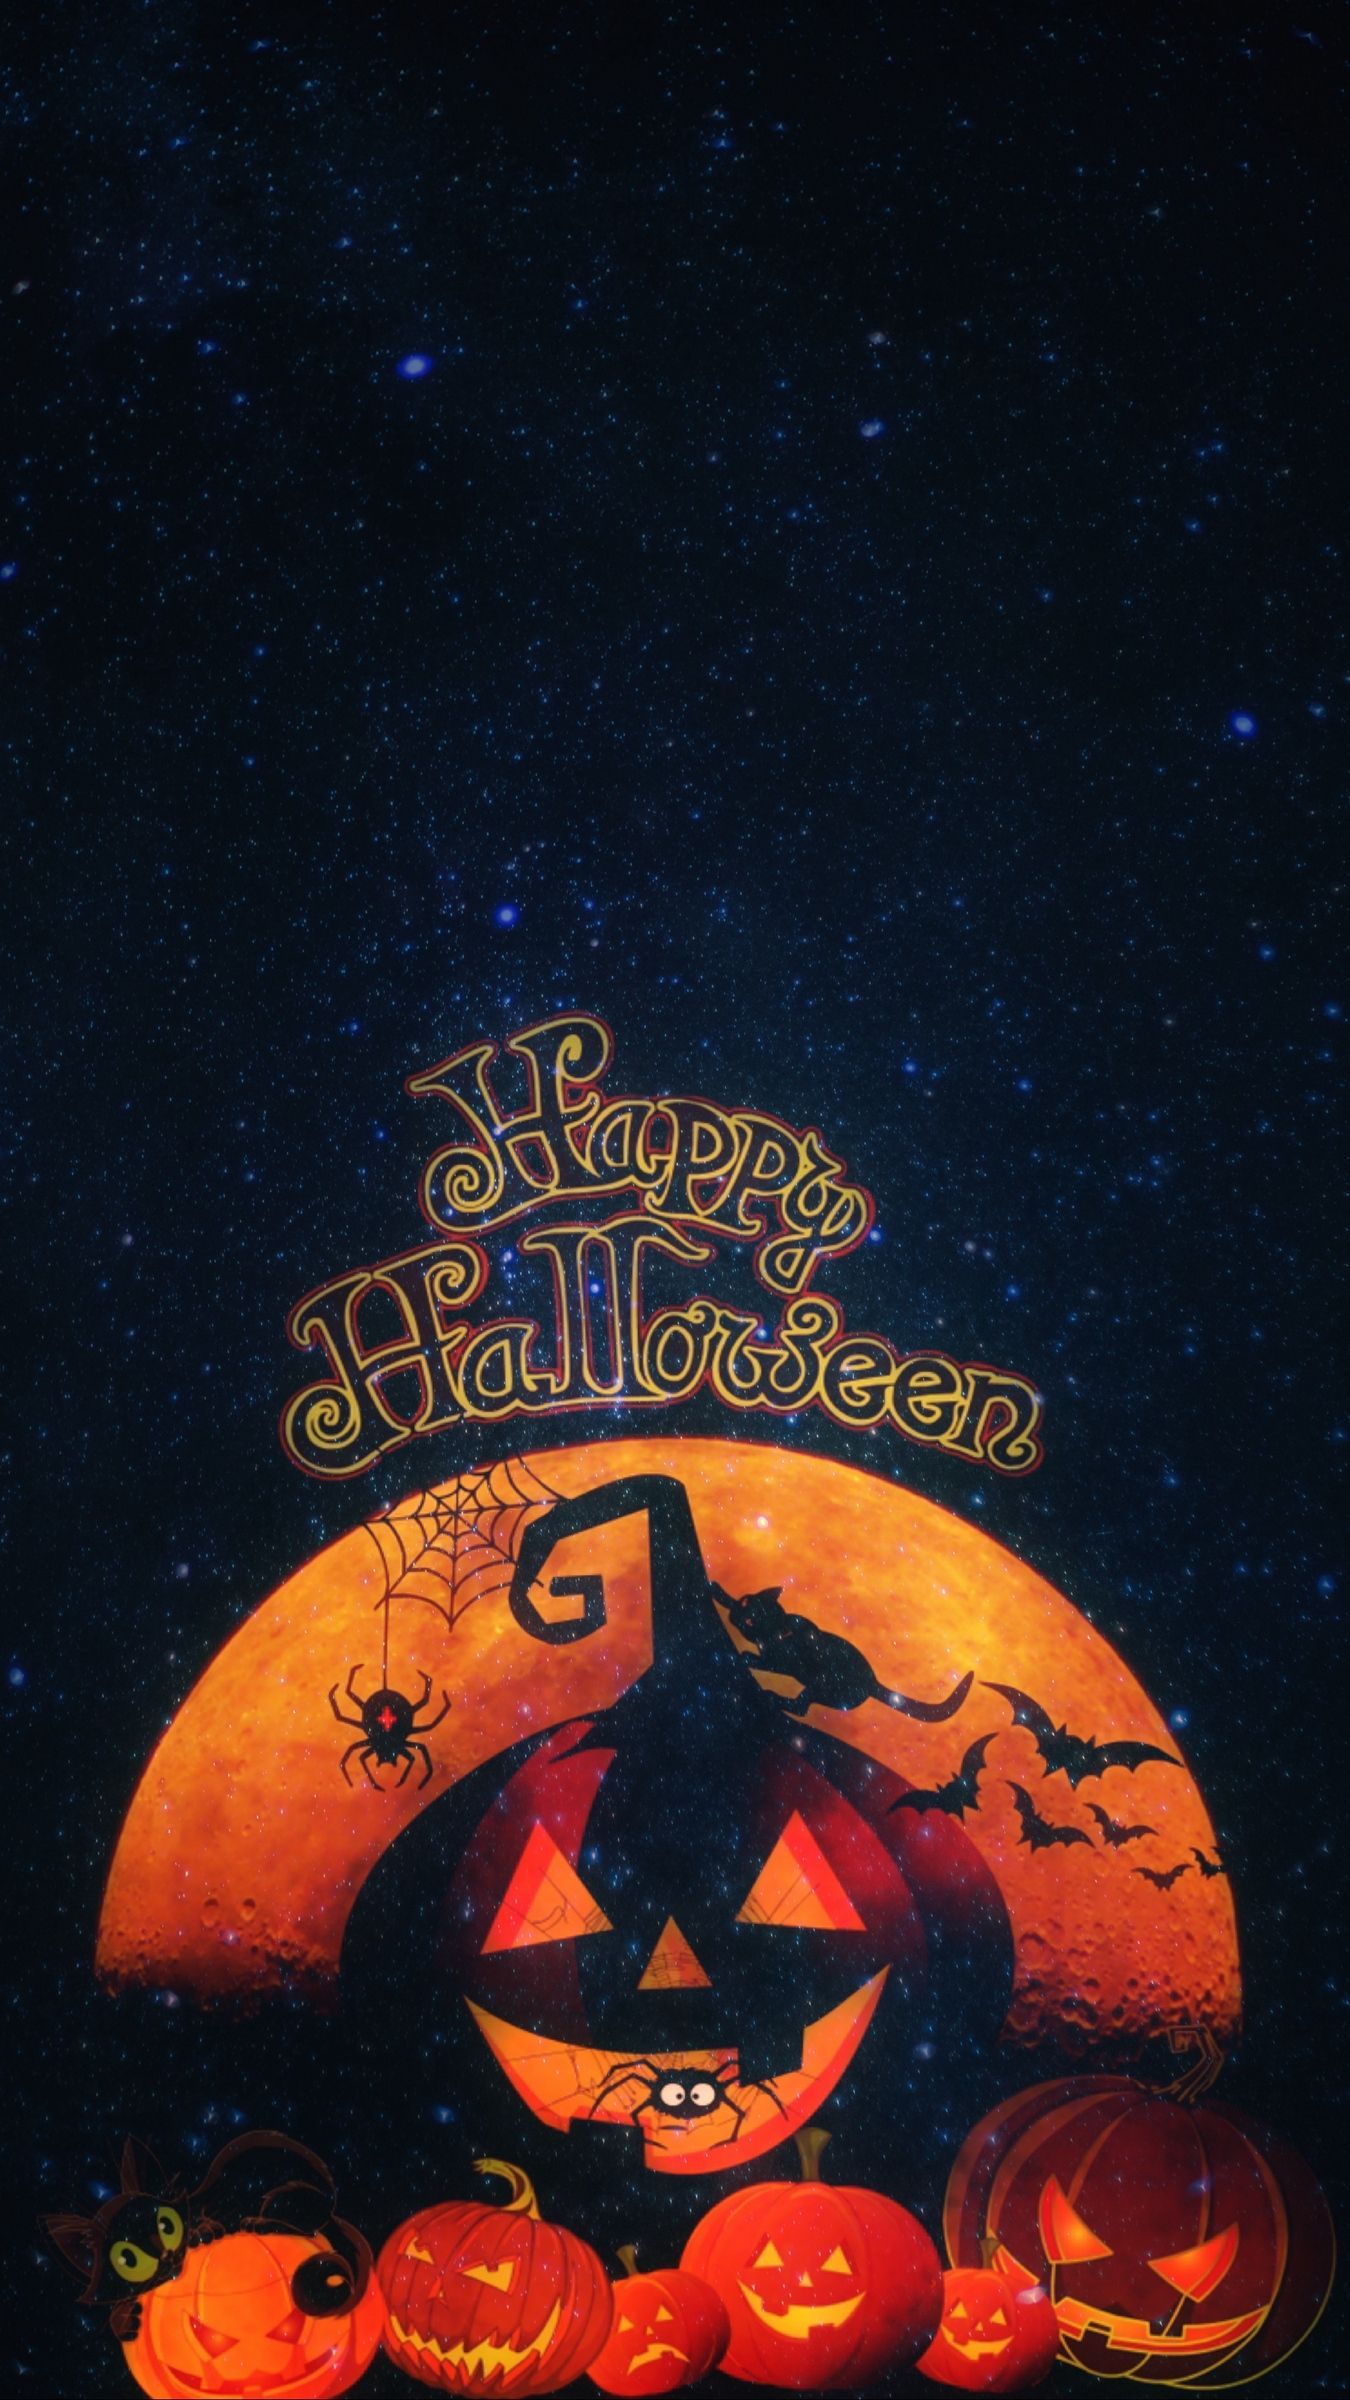 ♯ Halloween Wallpaper Cat. Halloween wallpaper, Free halloween wallpaper, Free halloween picture